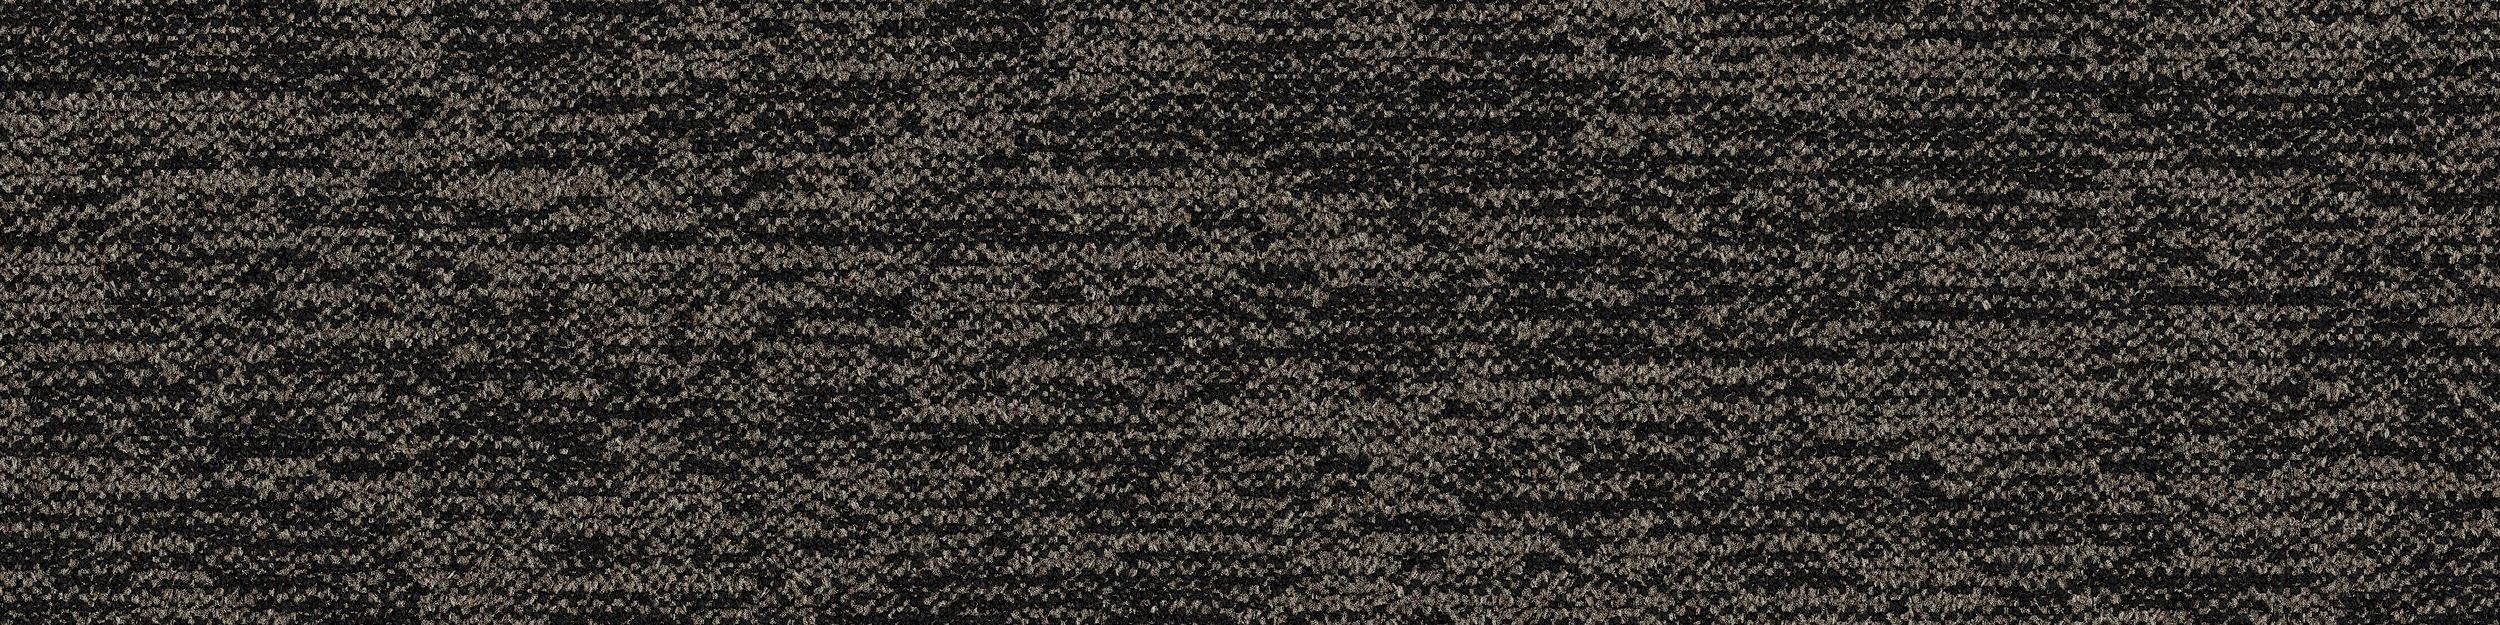 DL908 Carpet Tile In Basalt imagen número 3